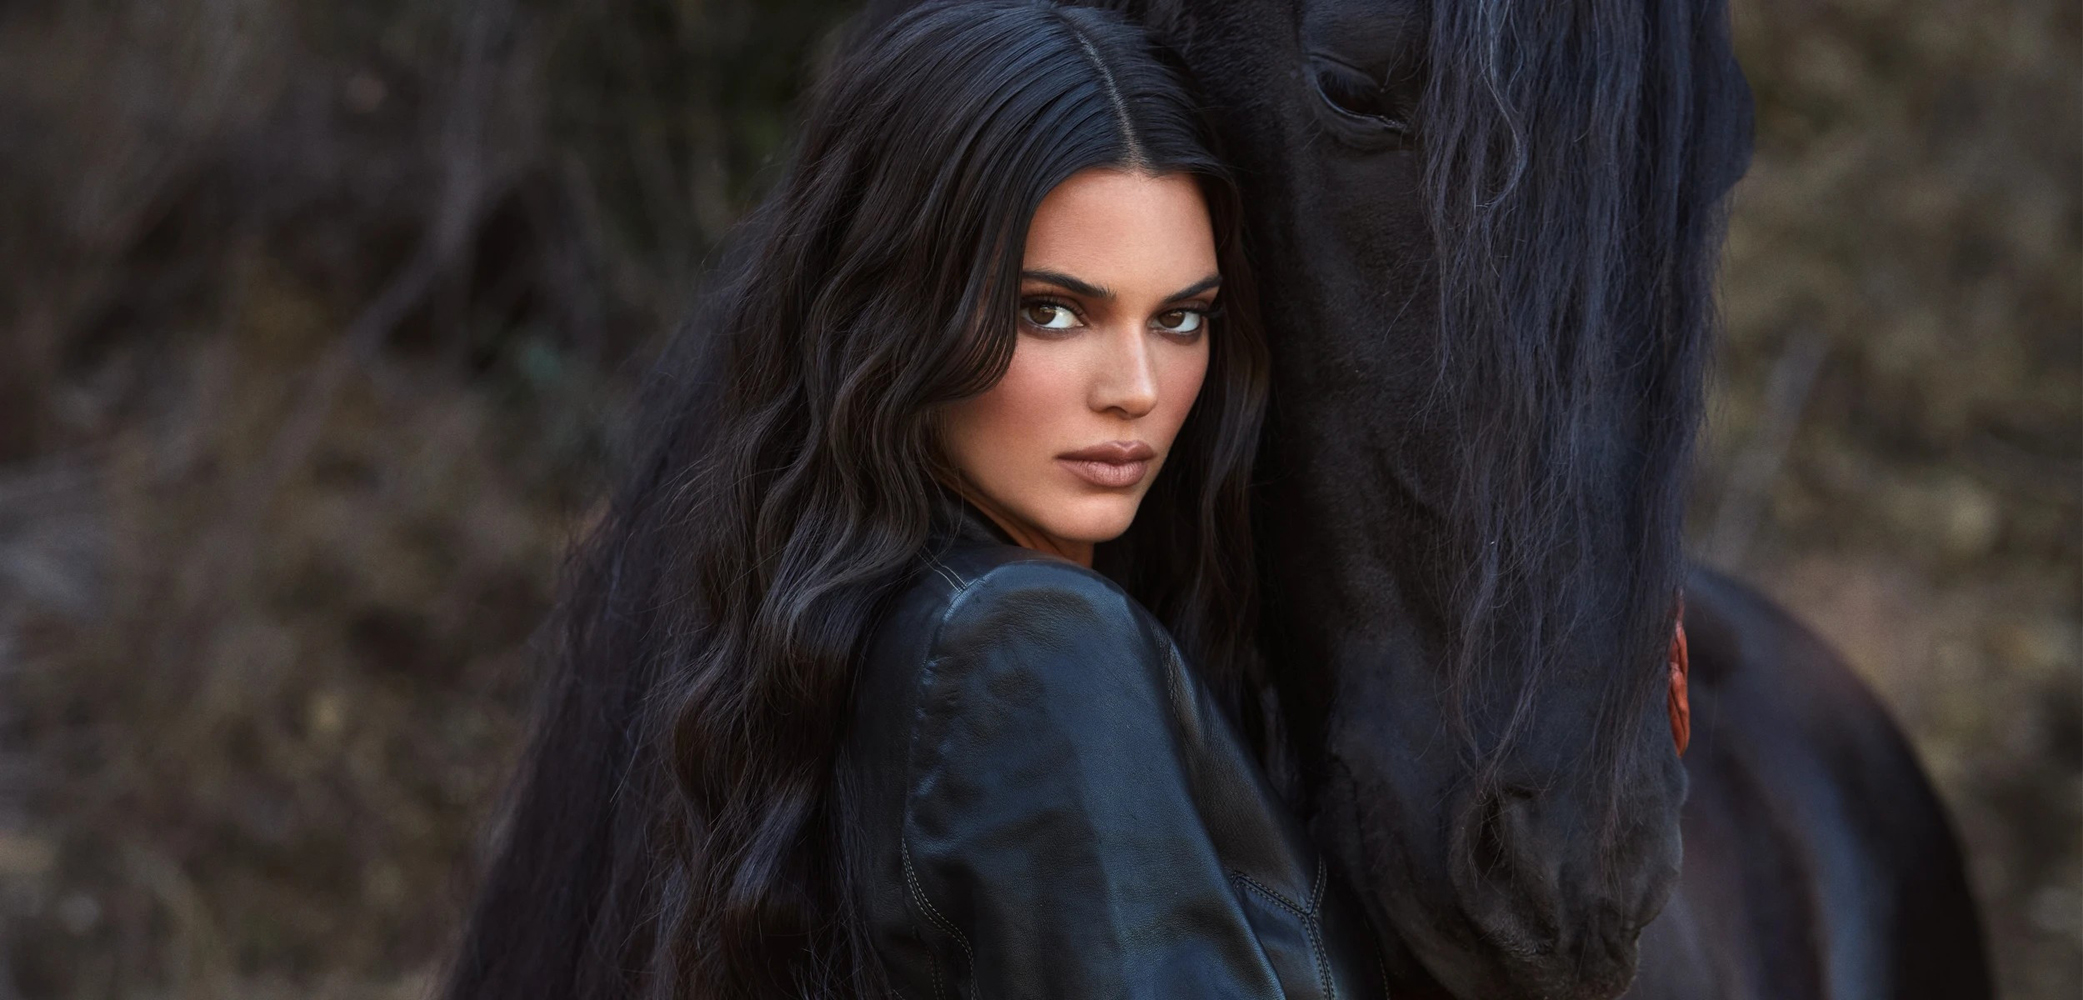 Kendall Jenner Women Model Long Hair Dark Hair Outdoors Women With Horse Makeup Brunette Women Outdo 2083x1000